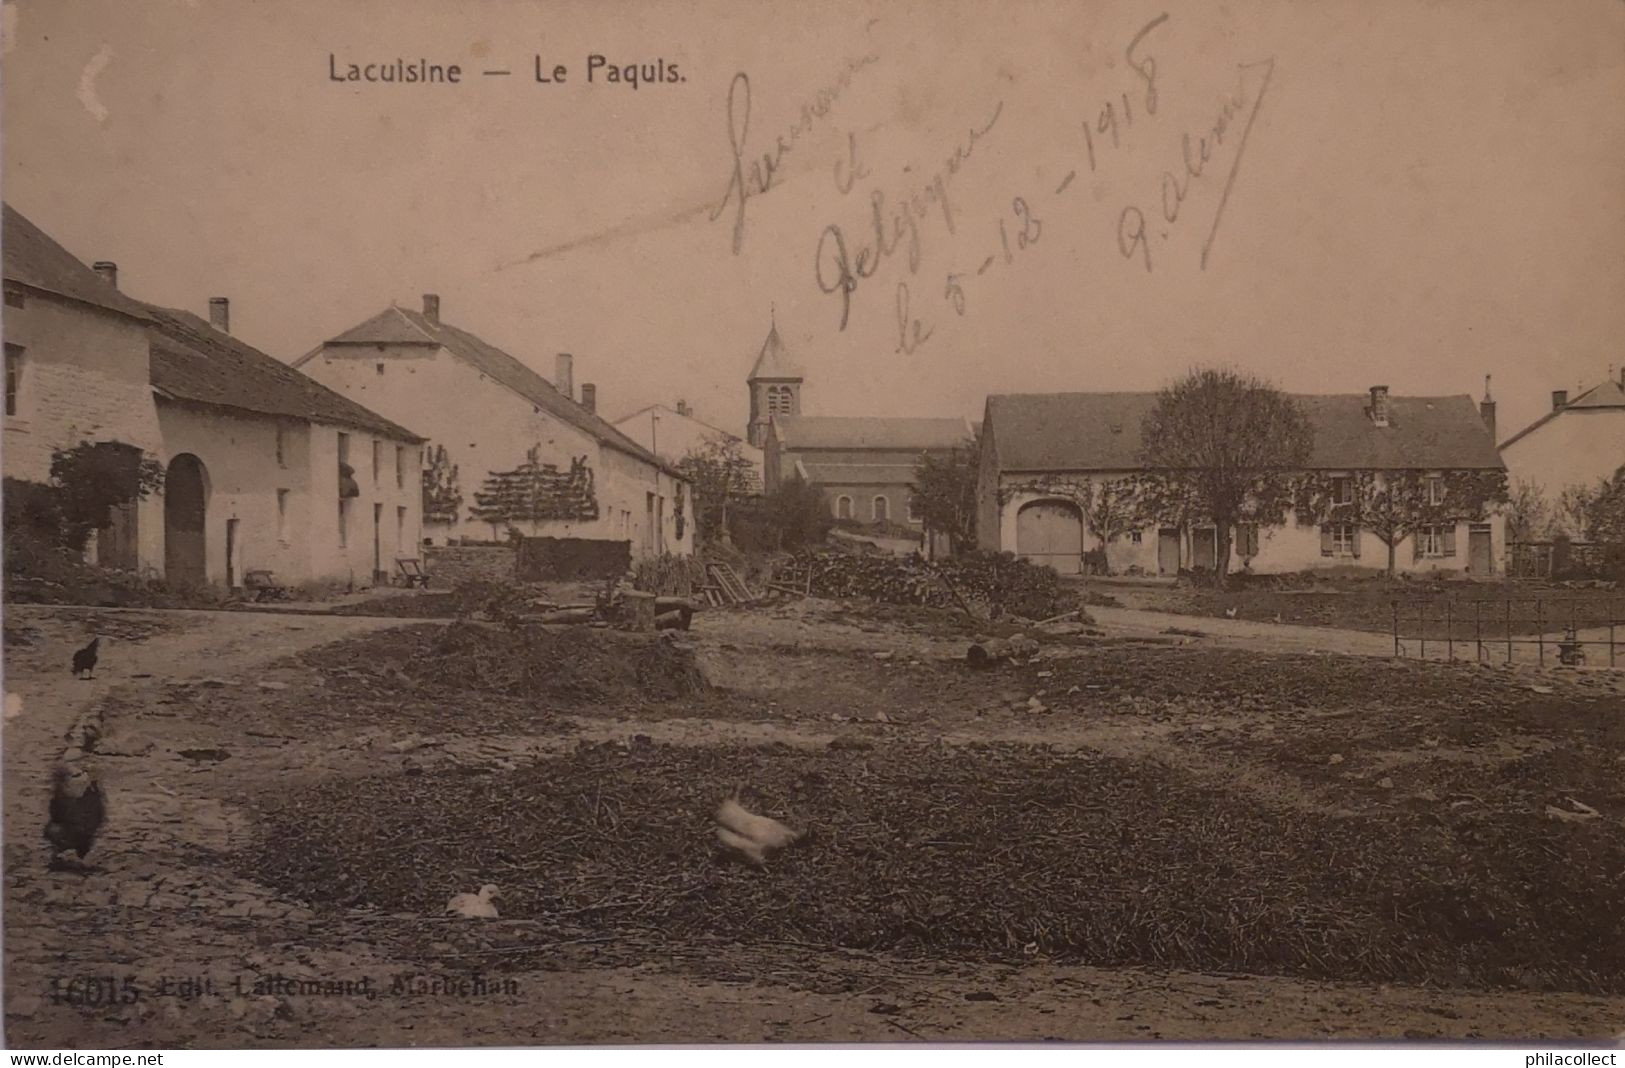 Lacuisine (Florenville) Le Paquis 1918? - Florenville